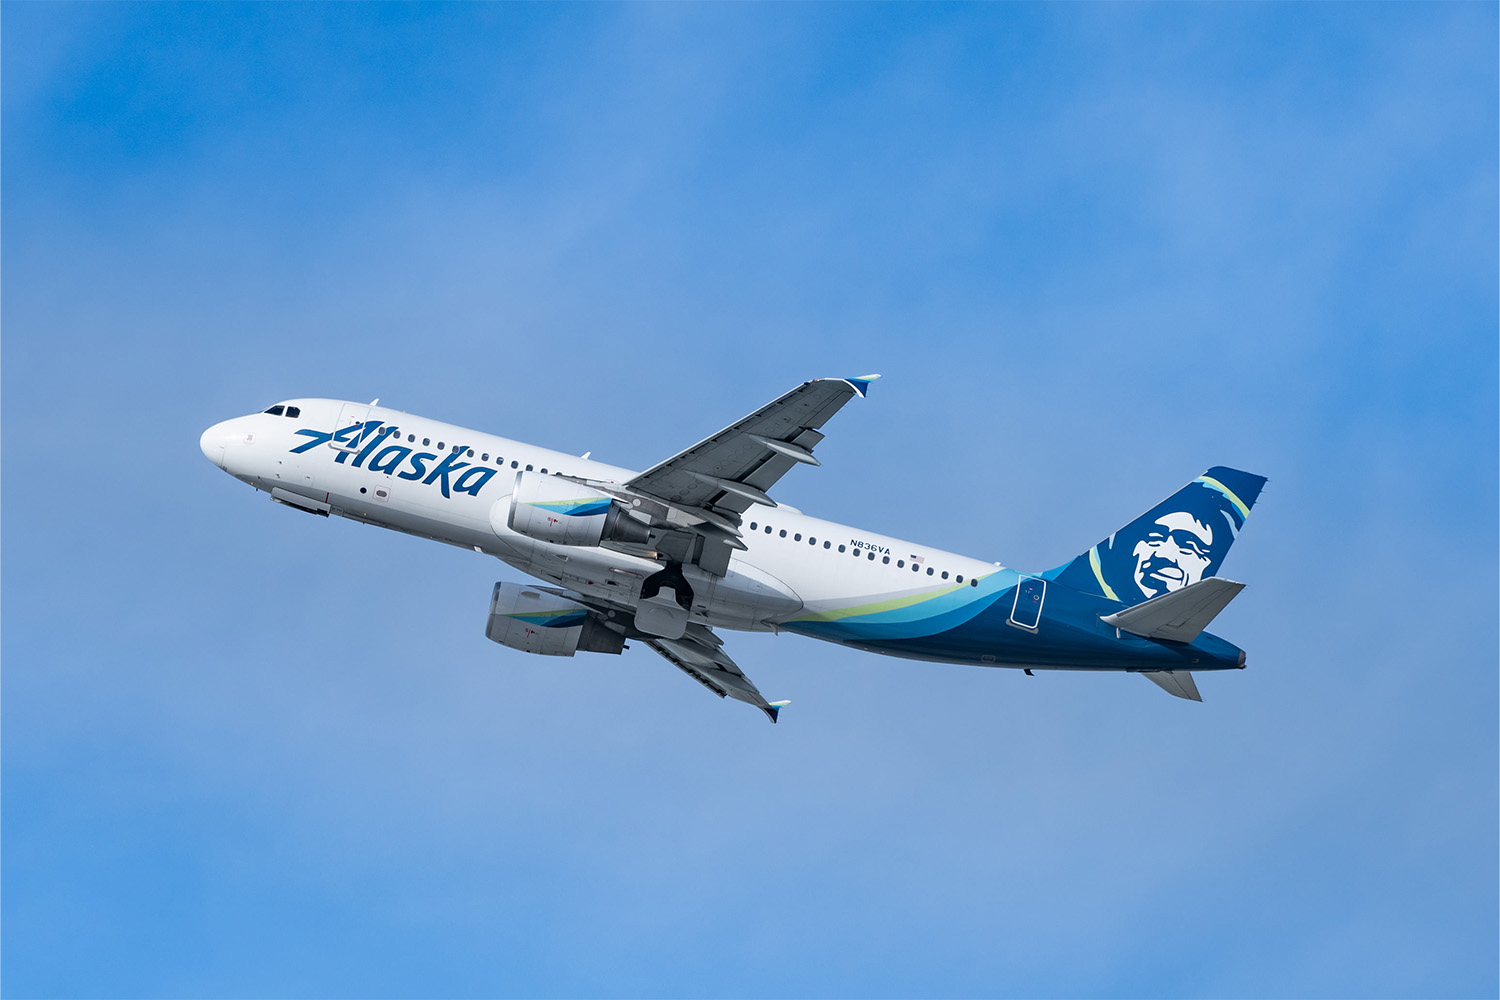 Alaska Airlines flight taking off